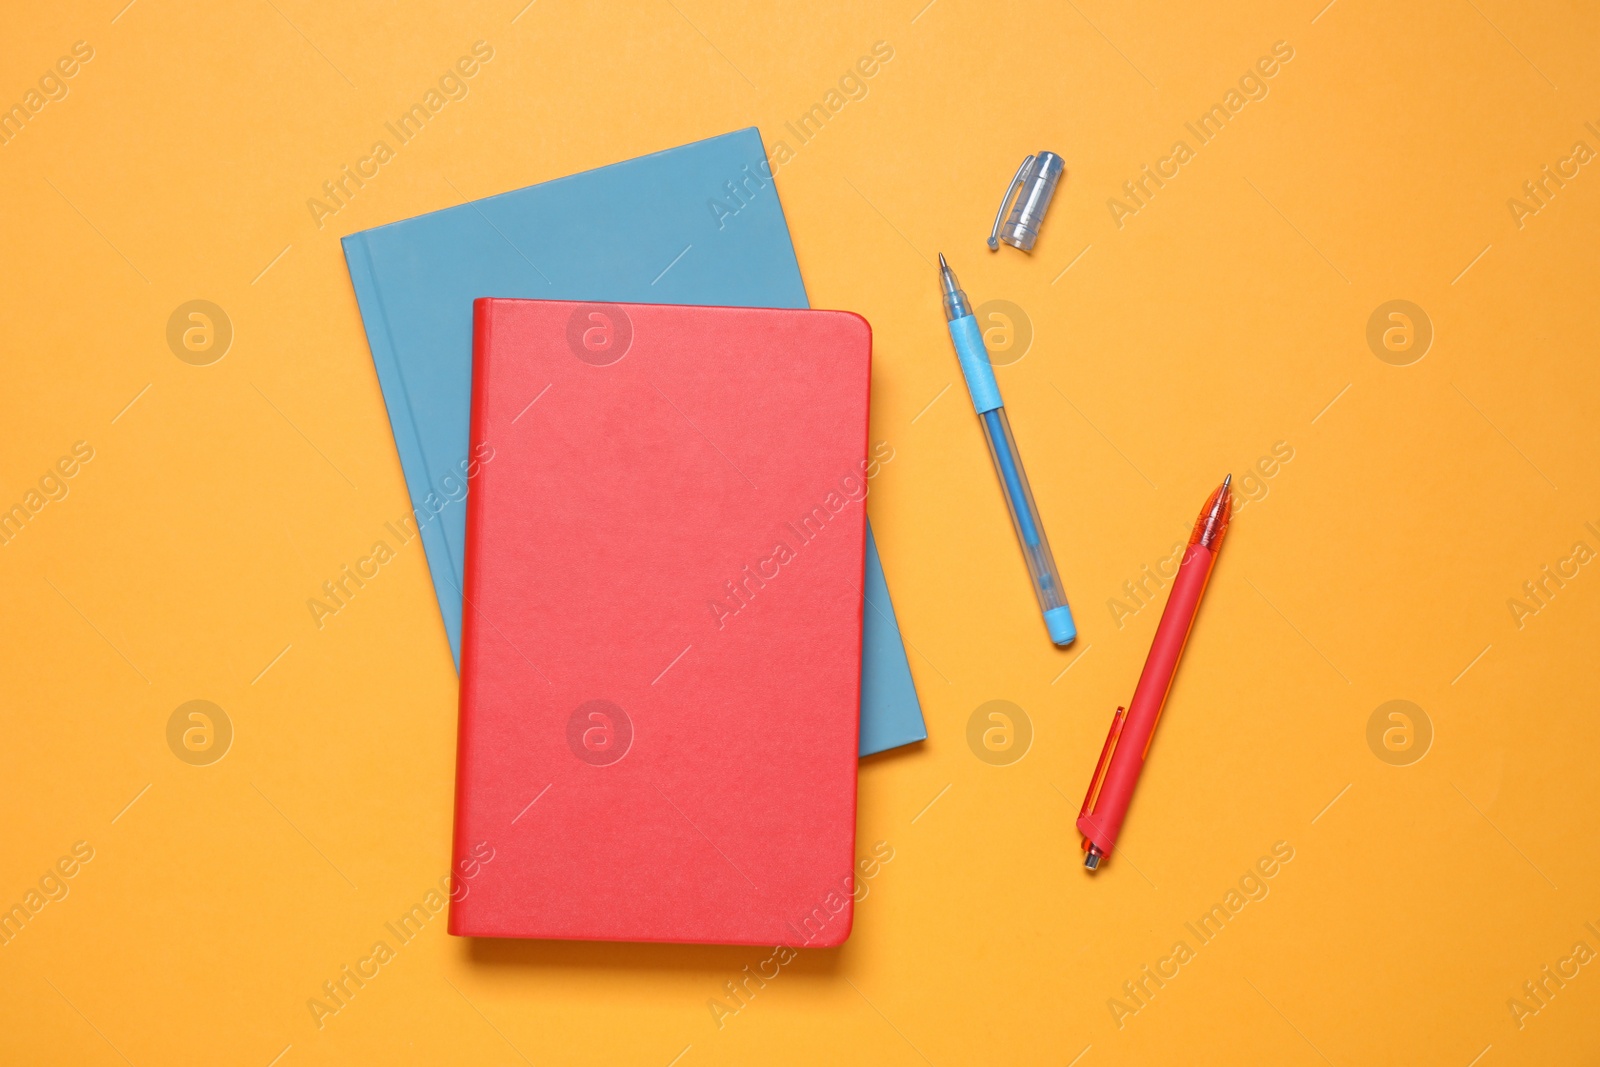 Photo of Stylish notepads and pens on orange background, flat lay